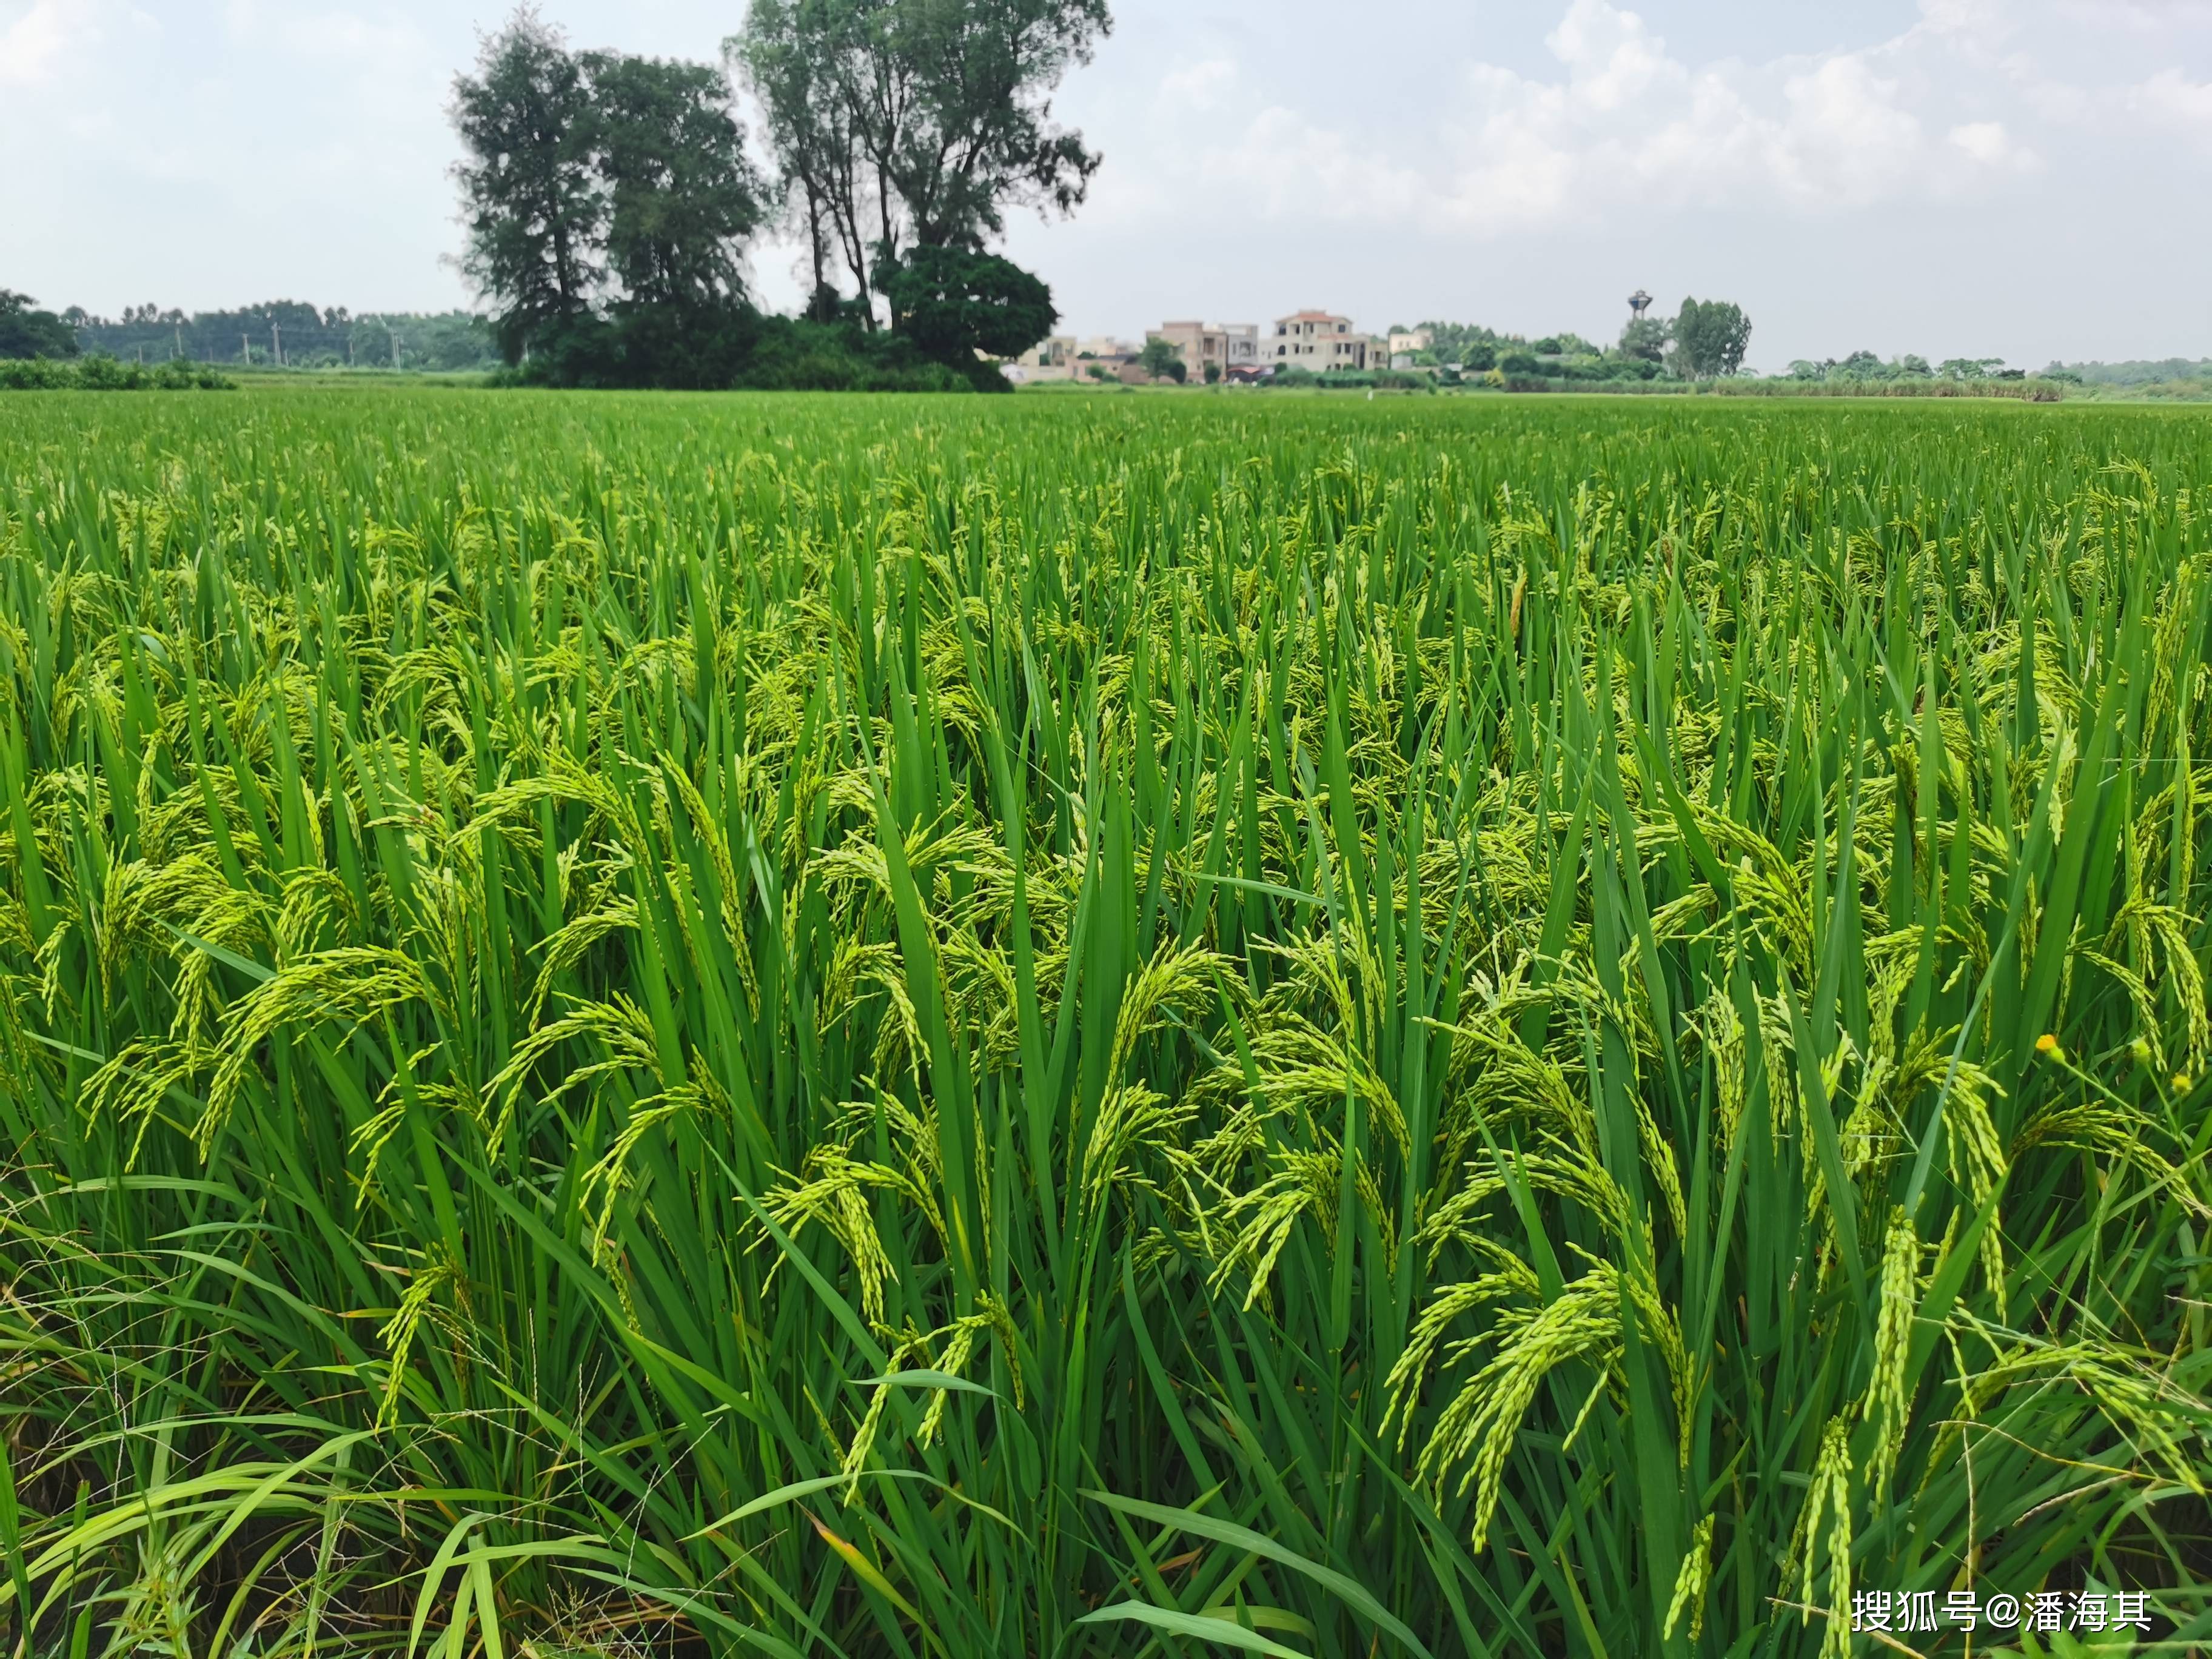 遂溪县洋青镇晚造水稻已进入半成熟期